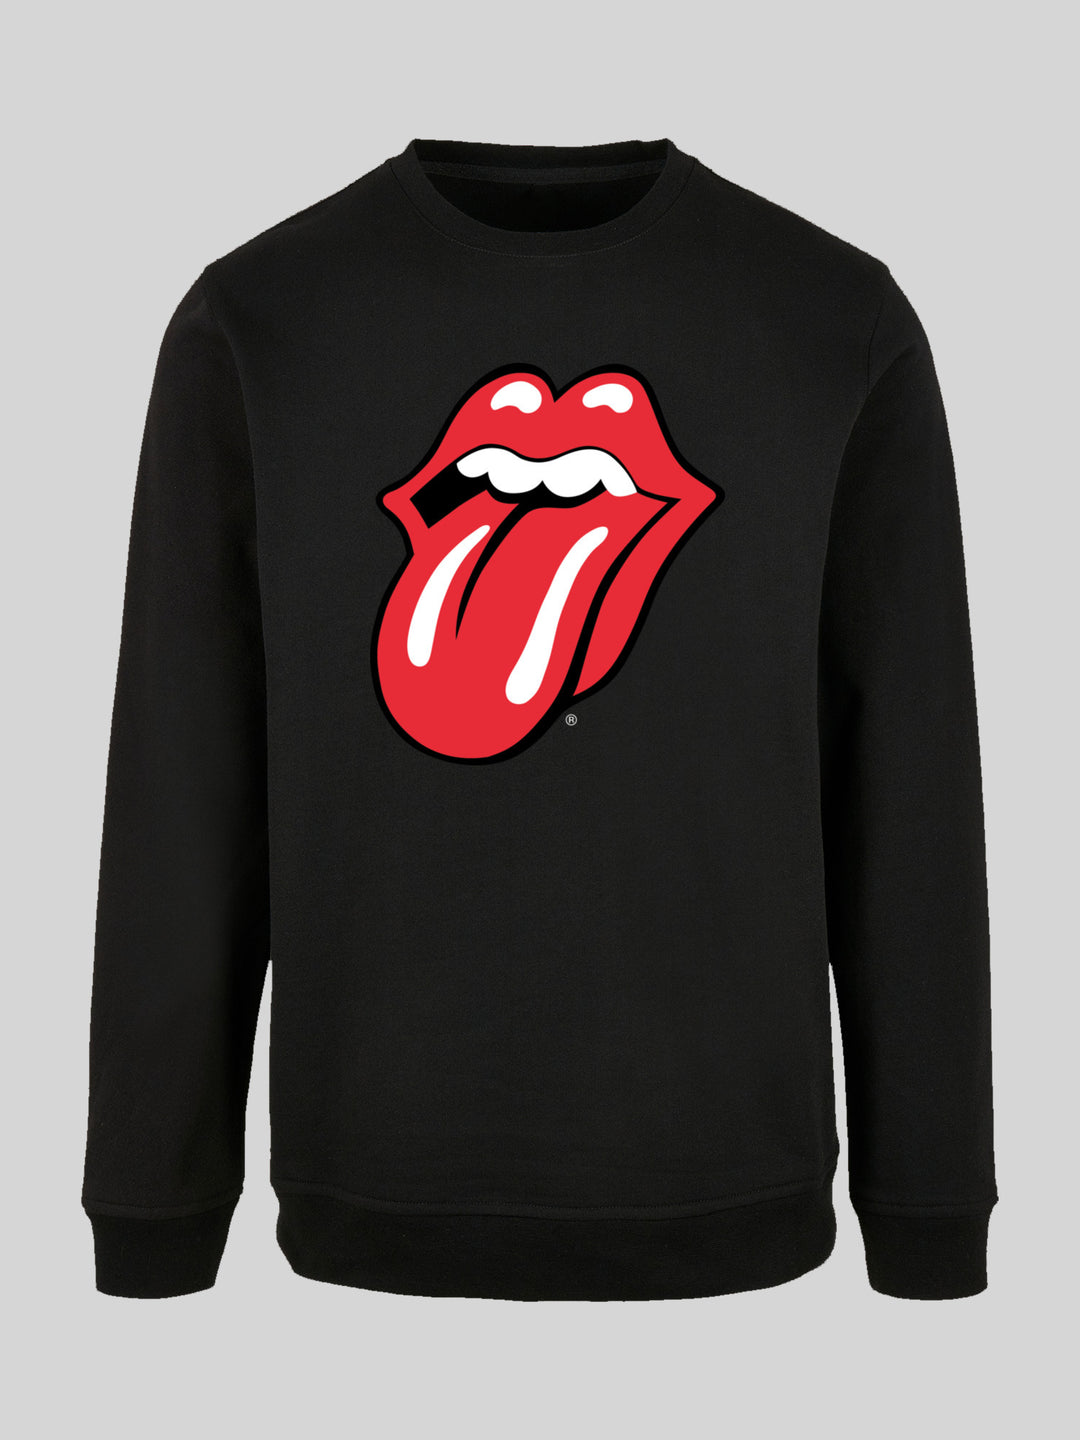 | Stones Longsleeve Sweate Tongue Rolling F4NT4STIC Sweatshirt The – | Classic Men